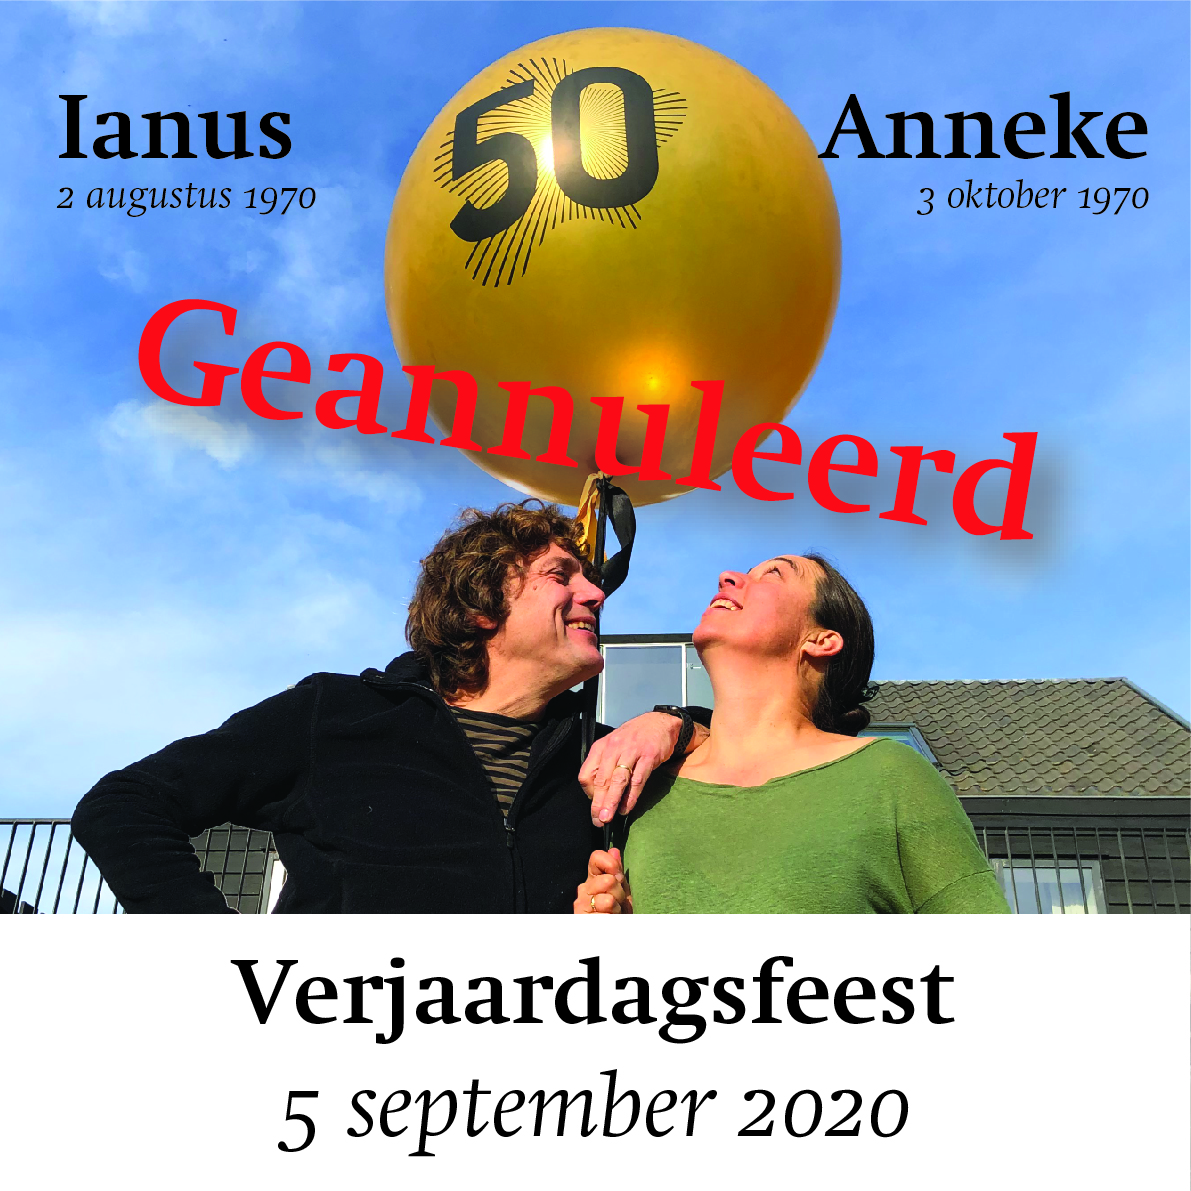 Anneke en Ianus 50 jaar, verjaardagsfeest op 5 september 2020